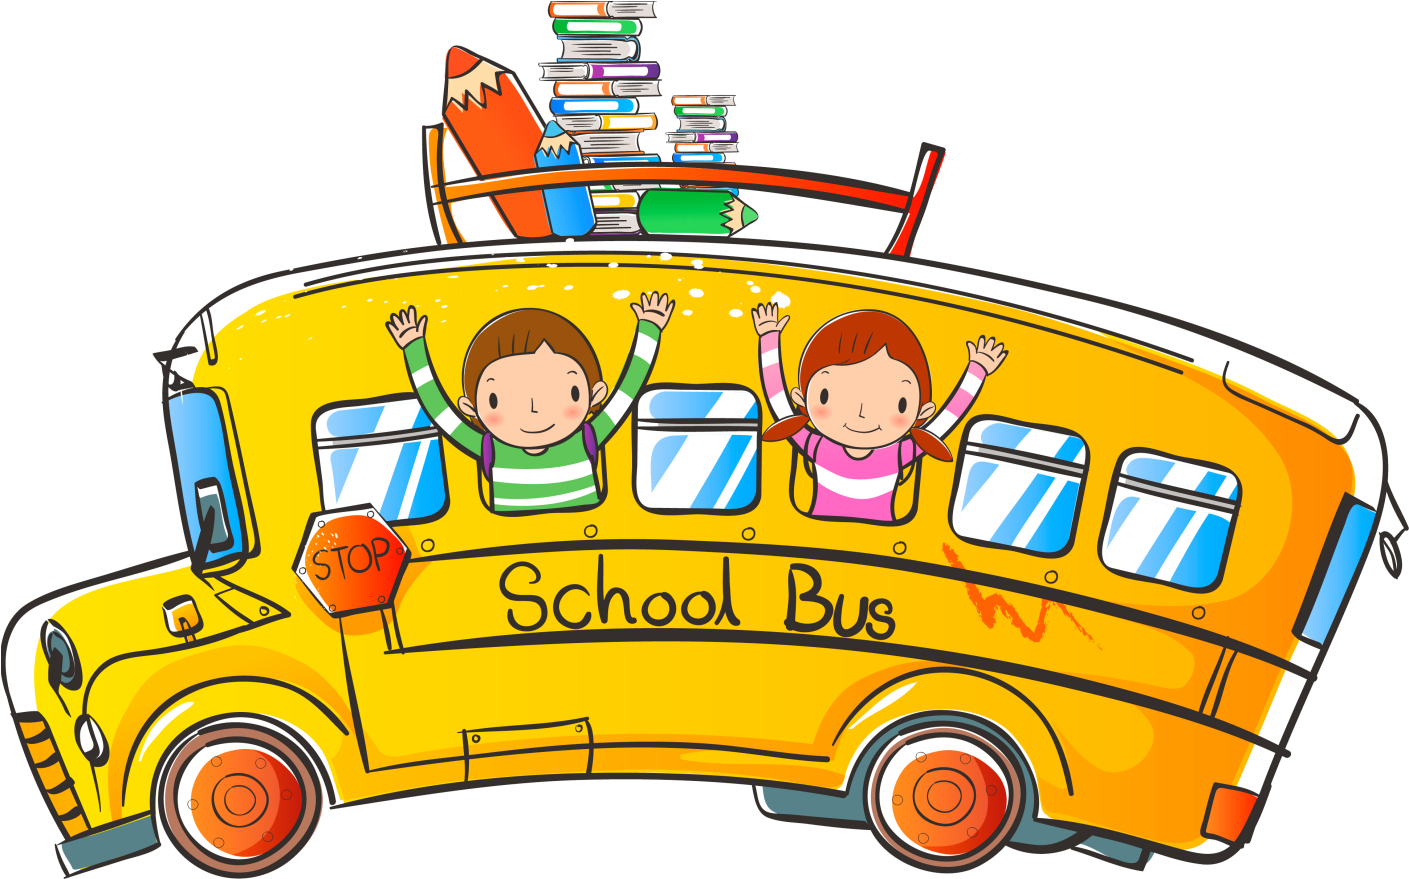 Картинка едет автобус. Автобус картинка для детей. Школьный автобус. Дети в автобусе путешествие. Школьный автобус на прозрачном фоне.